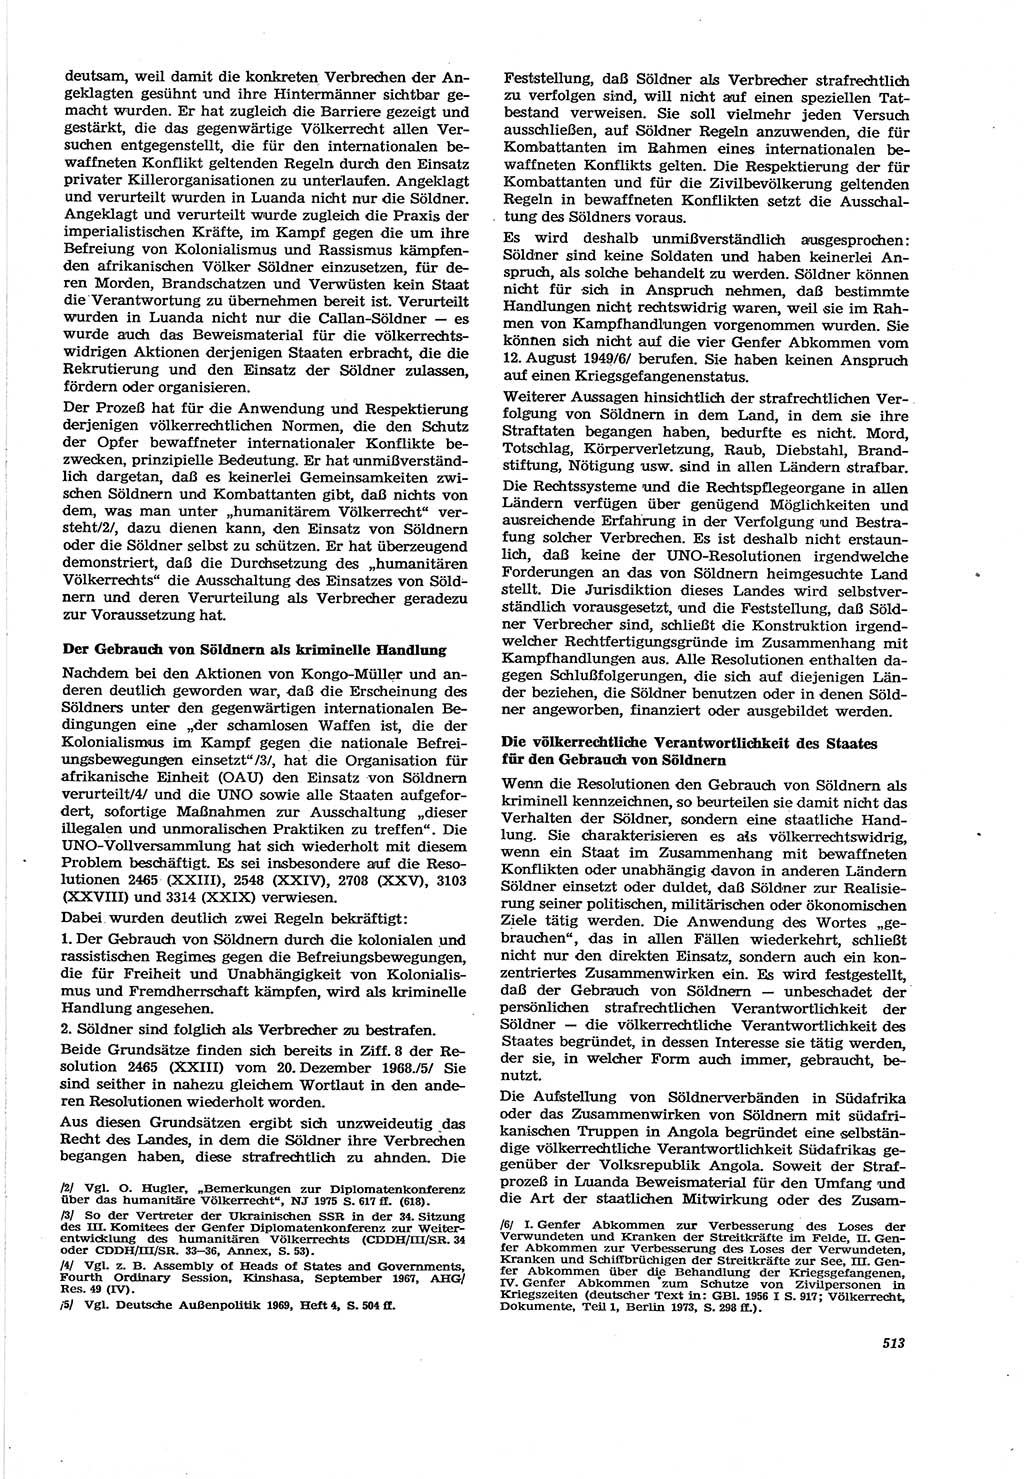 Neue Justiz (NJ), Zeitschrift für Recht und Rechtswissenschaft [Deutsche Demokratische Republik (DDR)], 30. Jahrgang 1976, Seite 513 (NJ DDR 1976, S. 513)